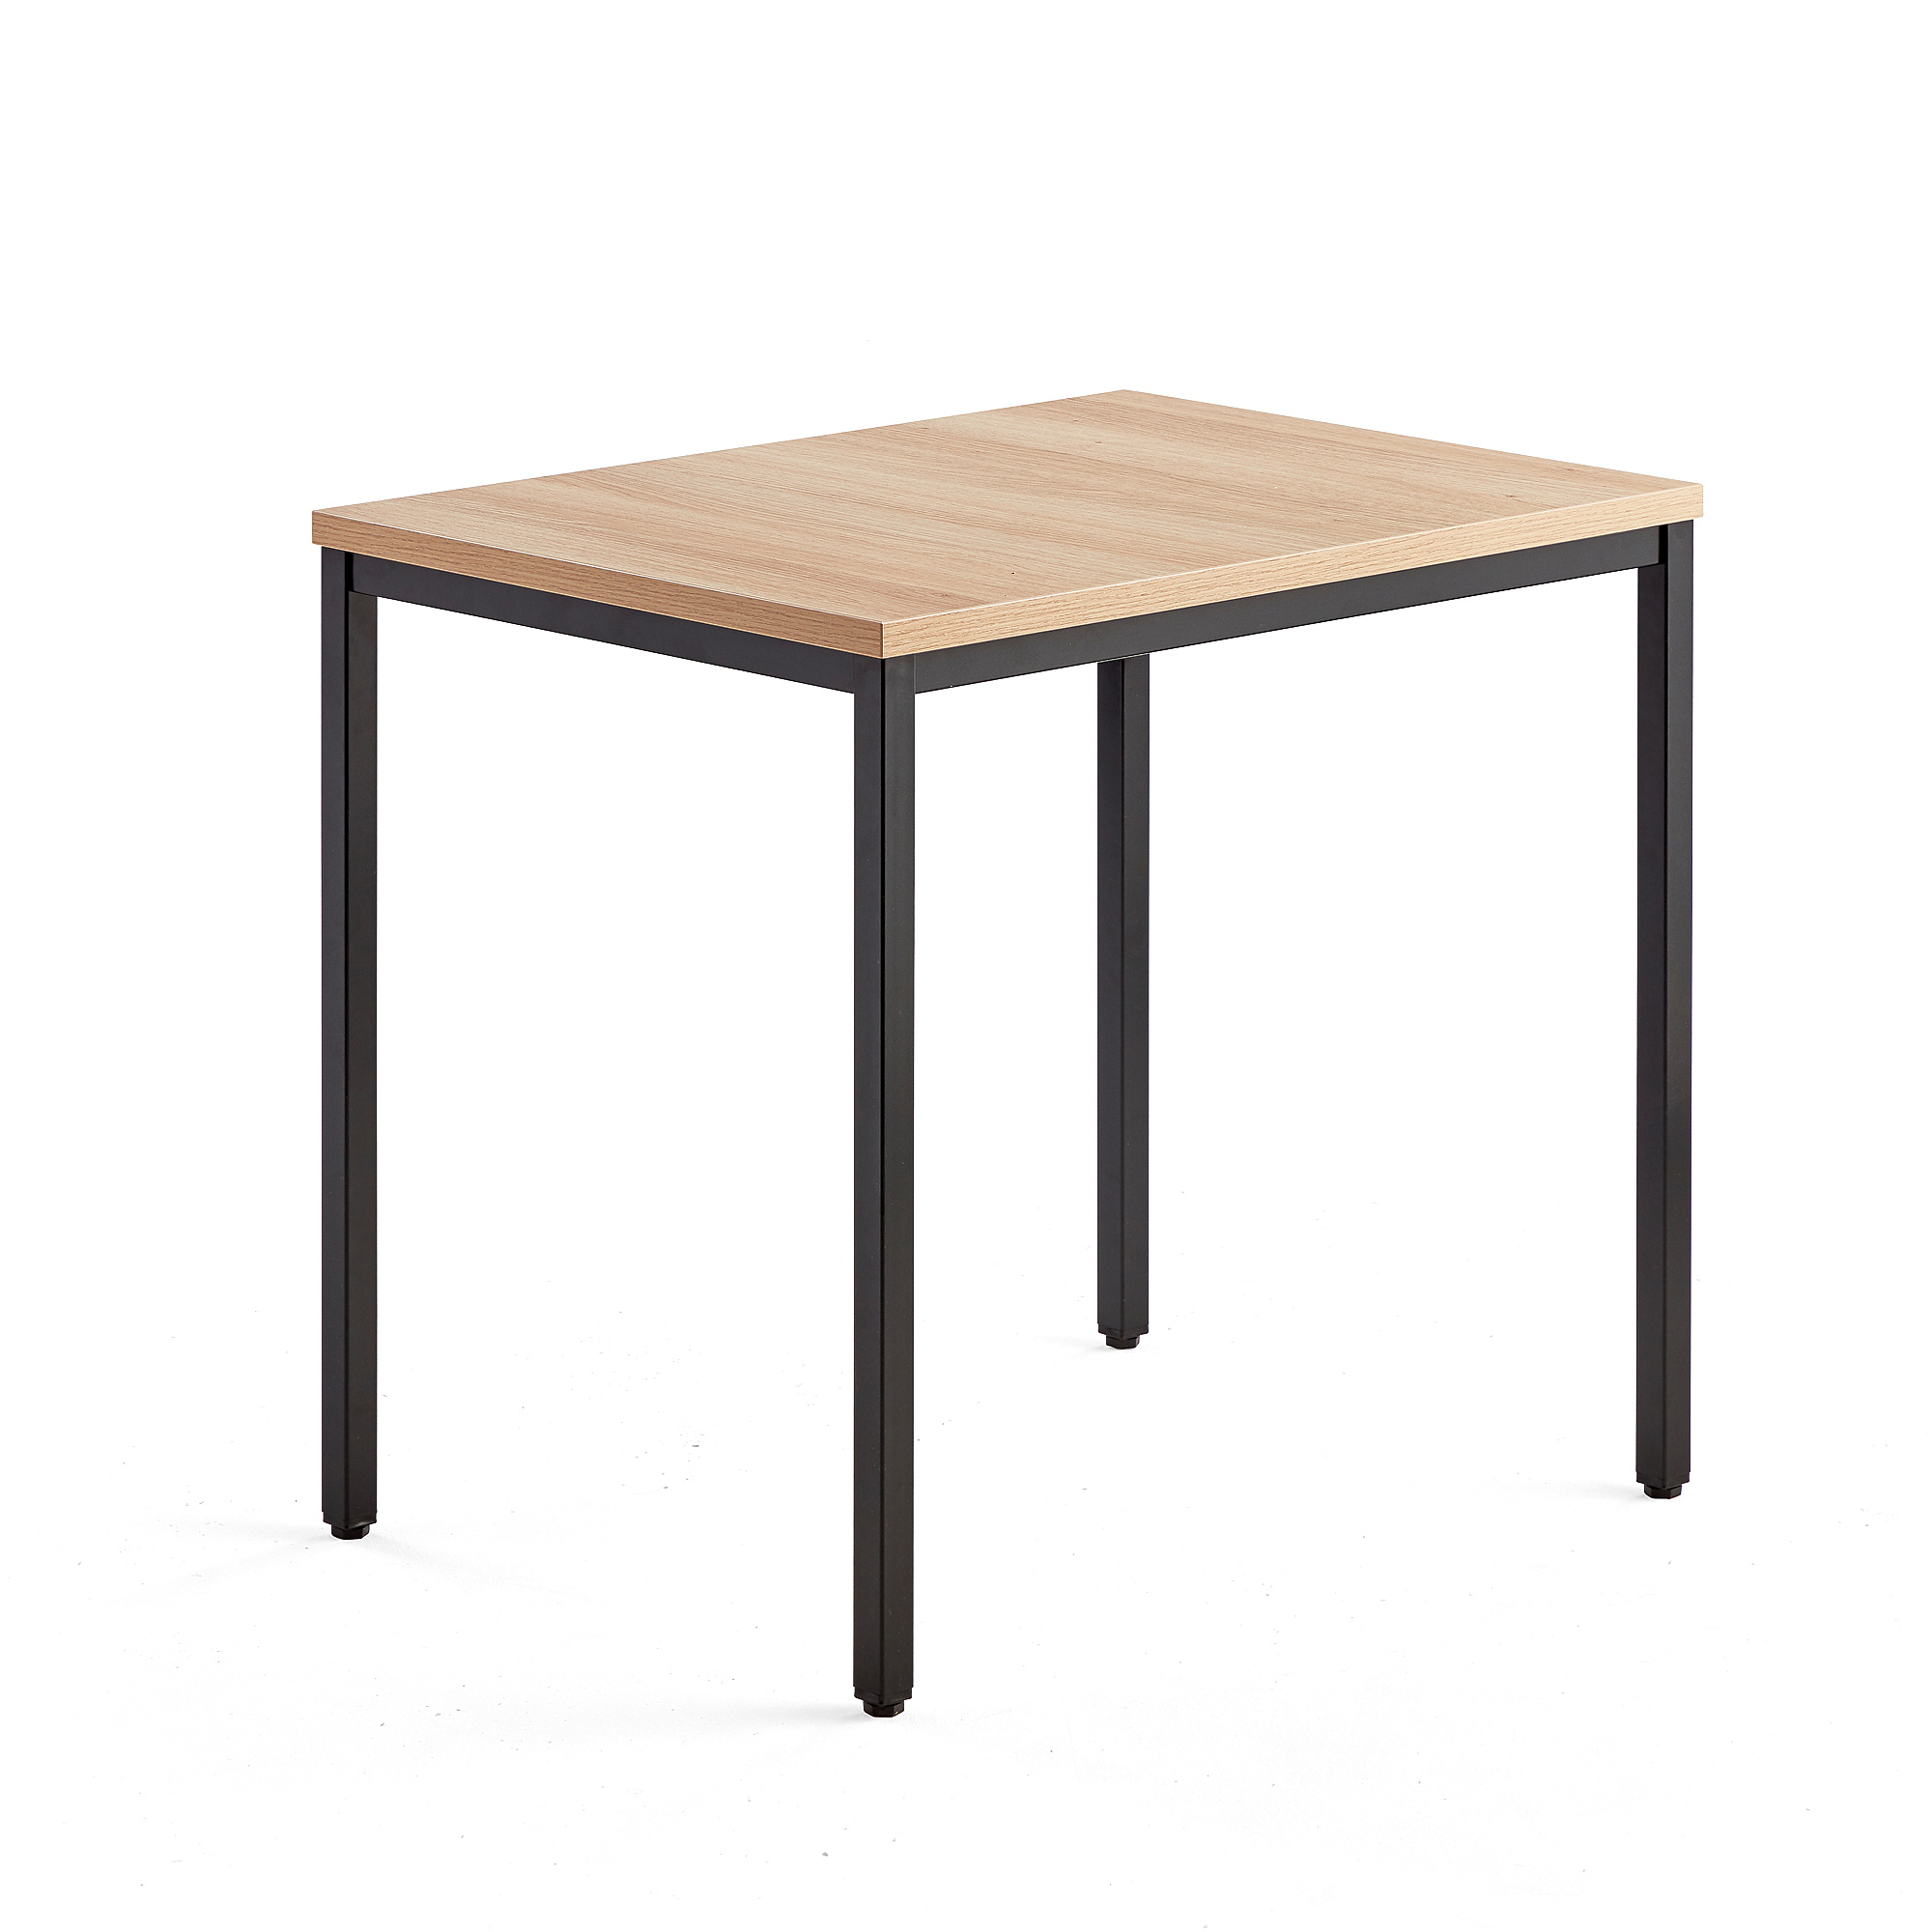 Přídavný stůl QBUS, 4 nohy, 800x600 mm, černý rám, dub